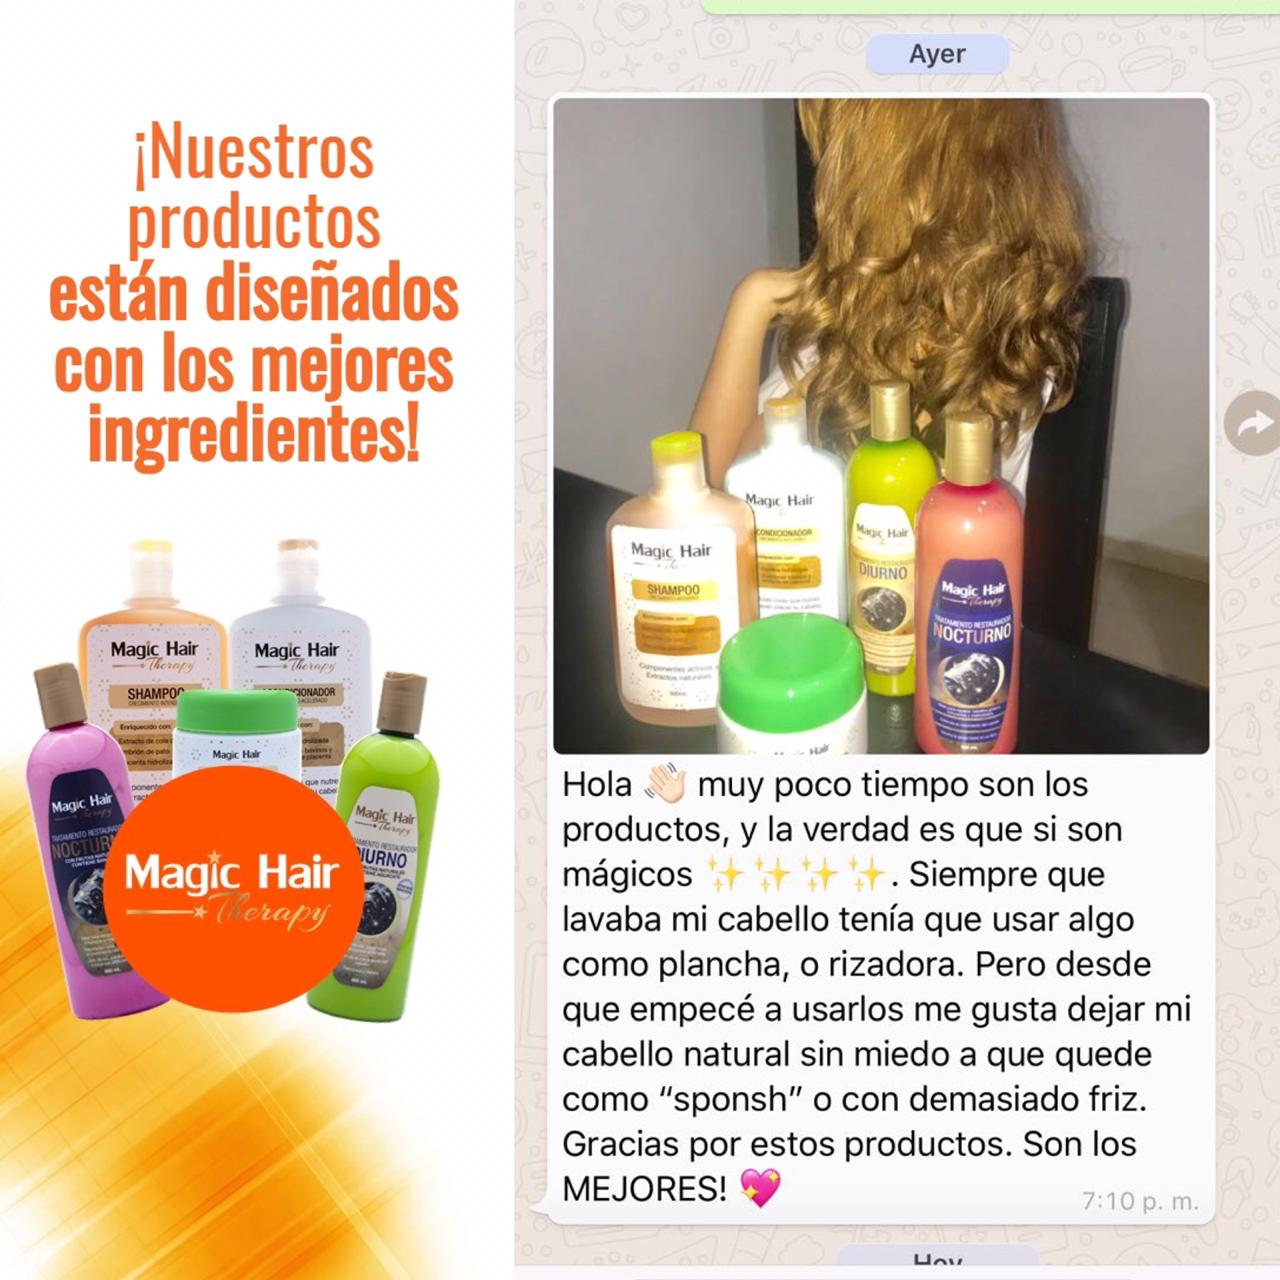 Kit Ultra Gold Crecimiento Cabello + Cápsulas Colágeno Biotina | Magic Hair | Magia en tu Cabello Kit Magic Hair Magic Hair Oficial